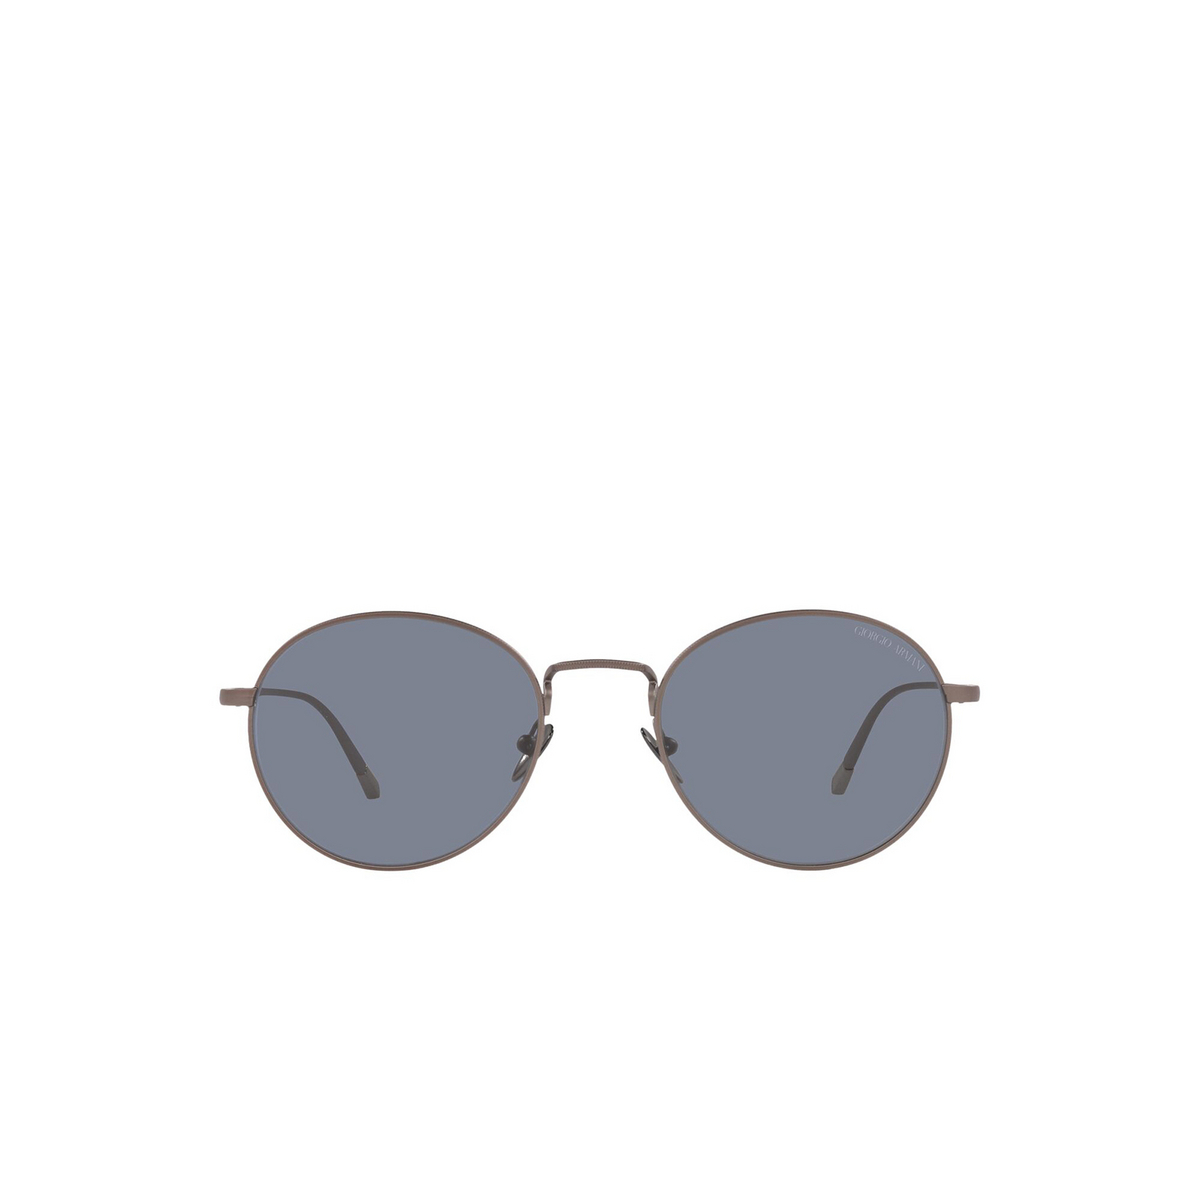 Giorgio Armani® Oval Sunglasses: AR6125 color Matte Bronze 300619 - front view.